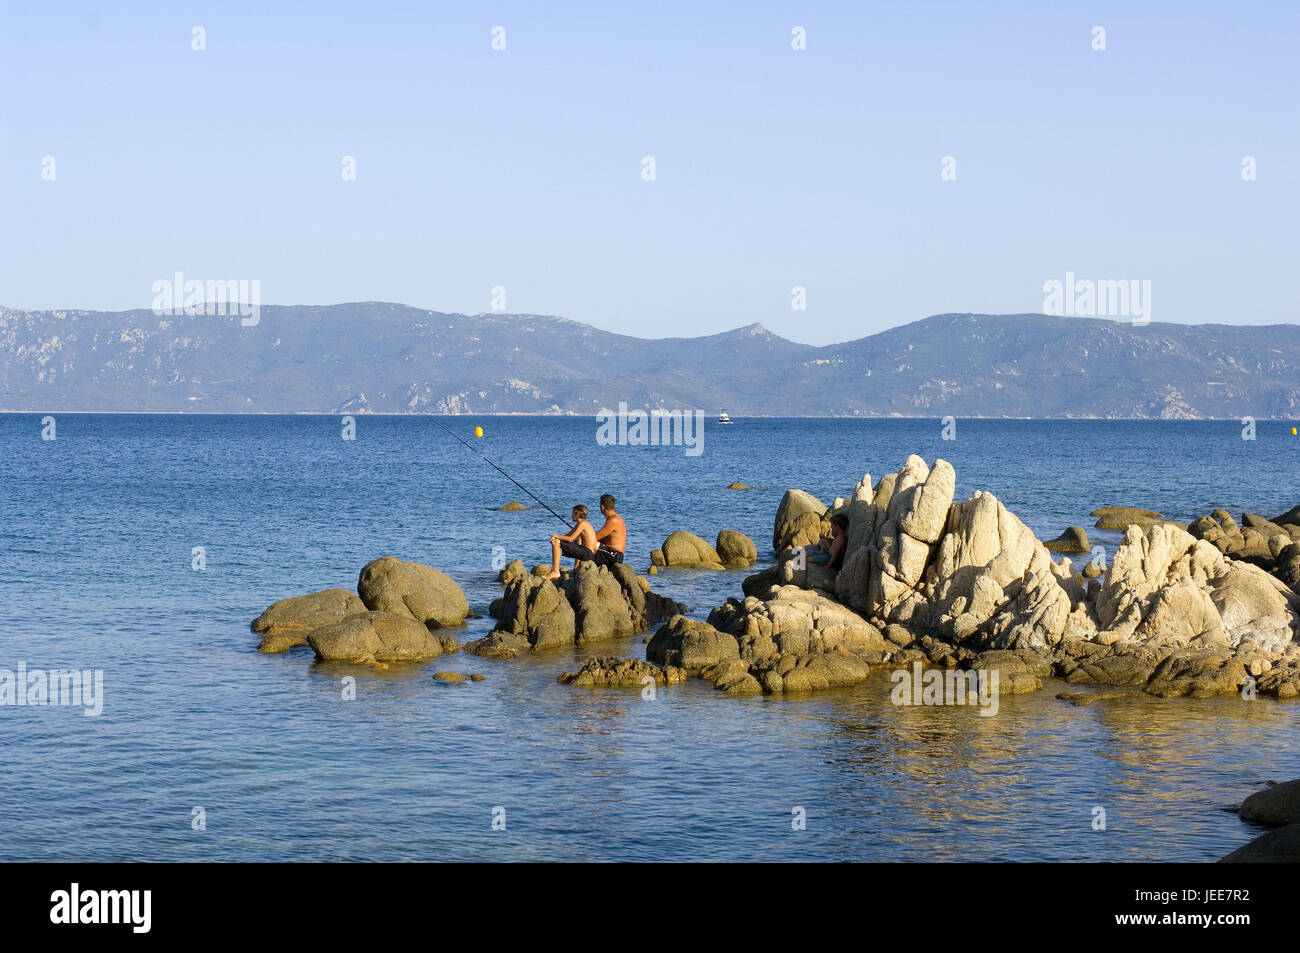 France, Corsica, Porto-Pollo, sea, rock, father, son, angling, Stock Photo